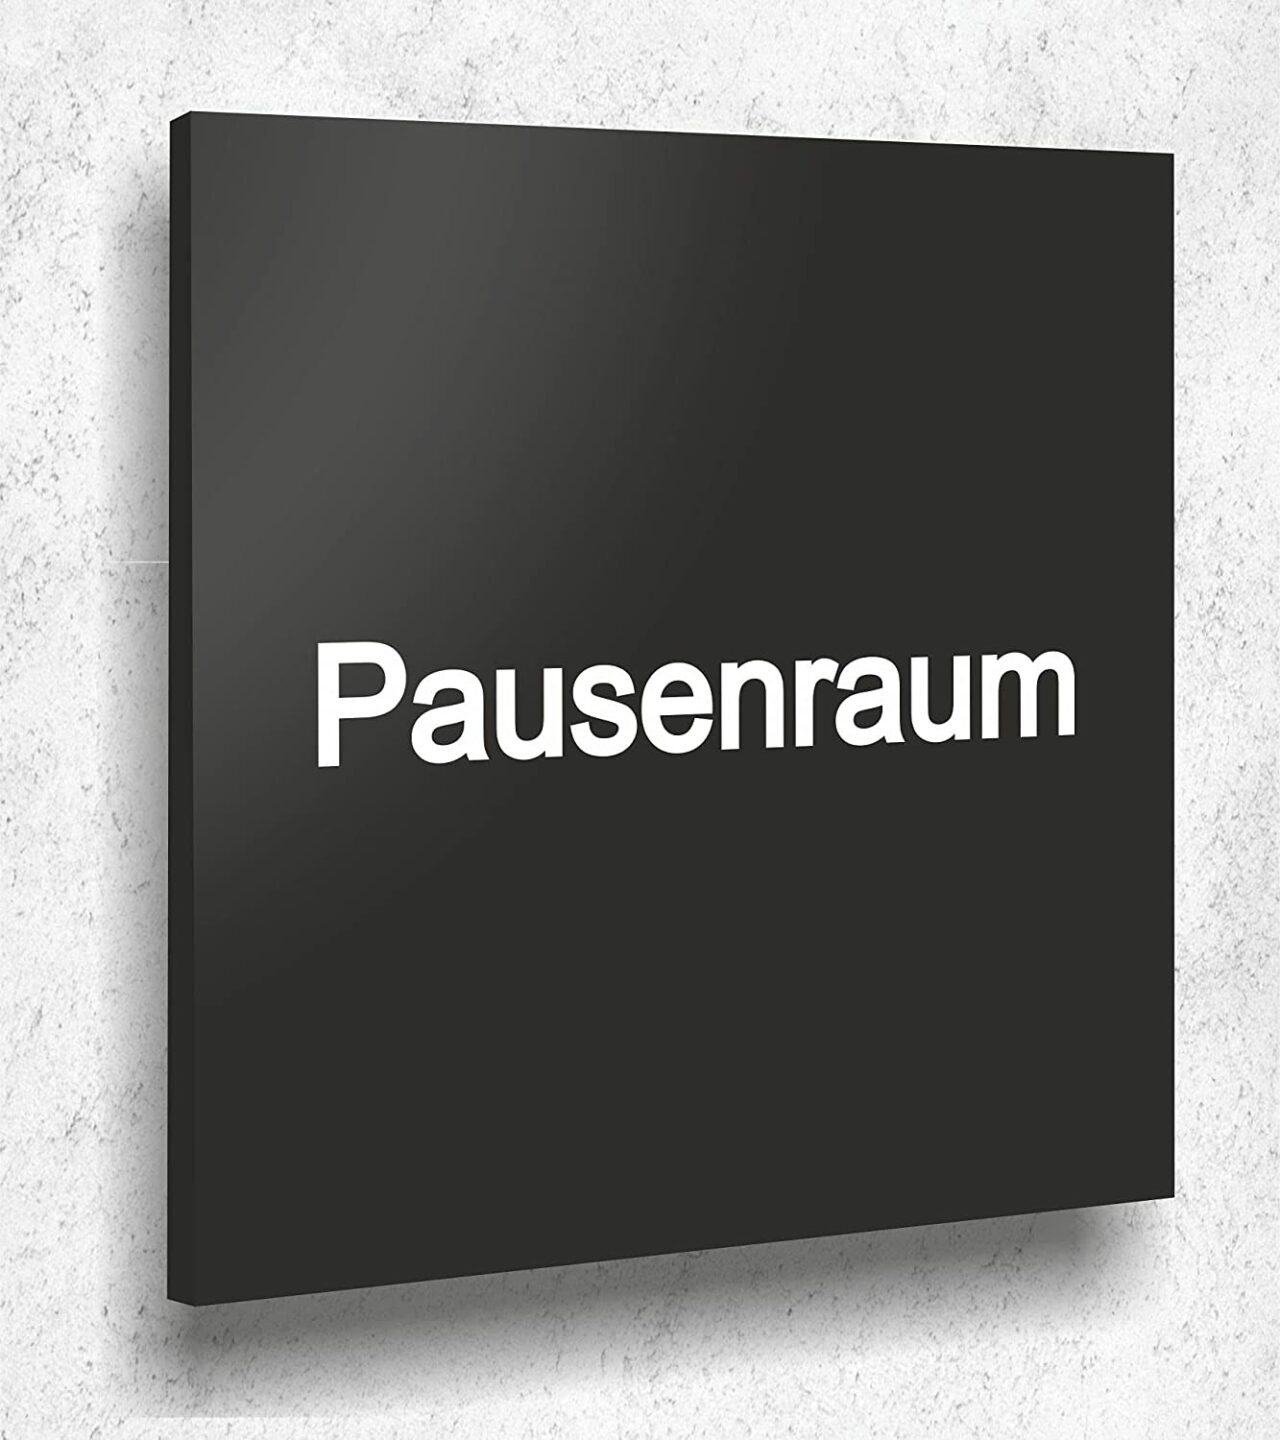 Türschild Pausenraum Schild Schwarz Matt UV Druck 12 x 12cm - 3mm Acrylglas - Made in Germany Art.Nr. A 2029